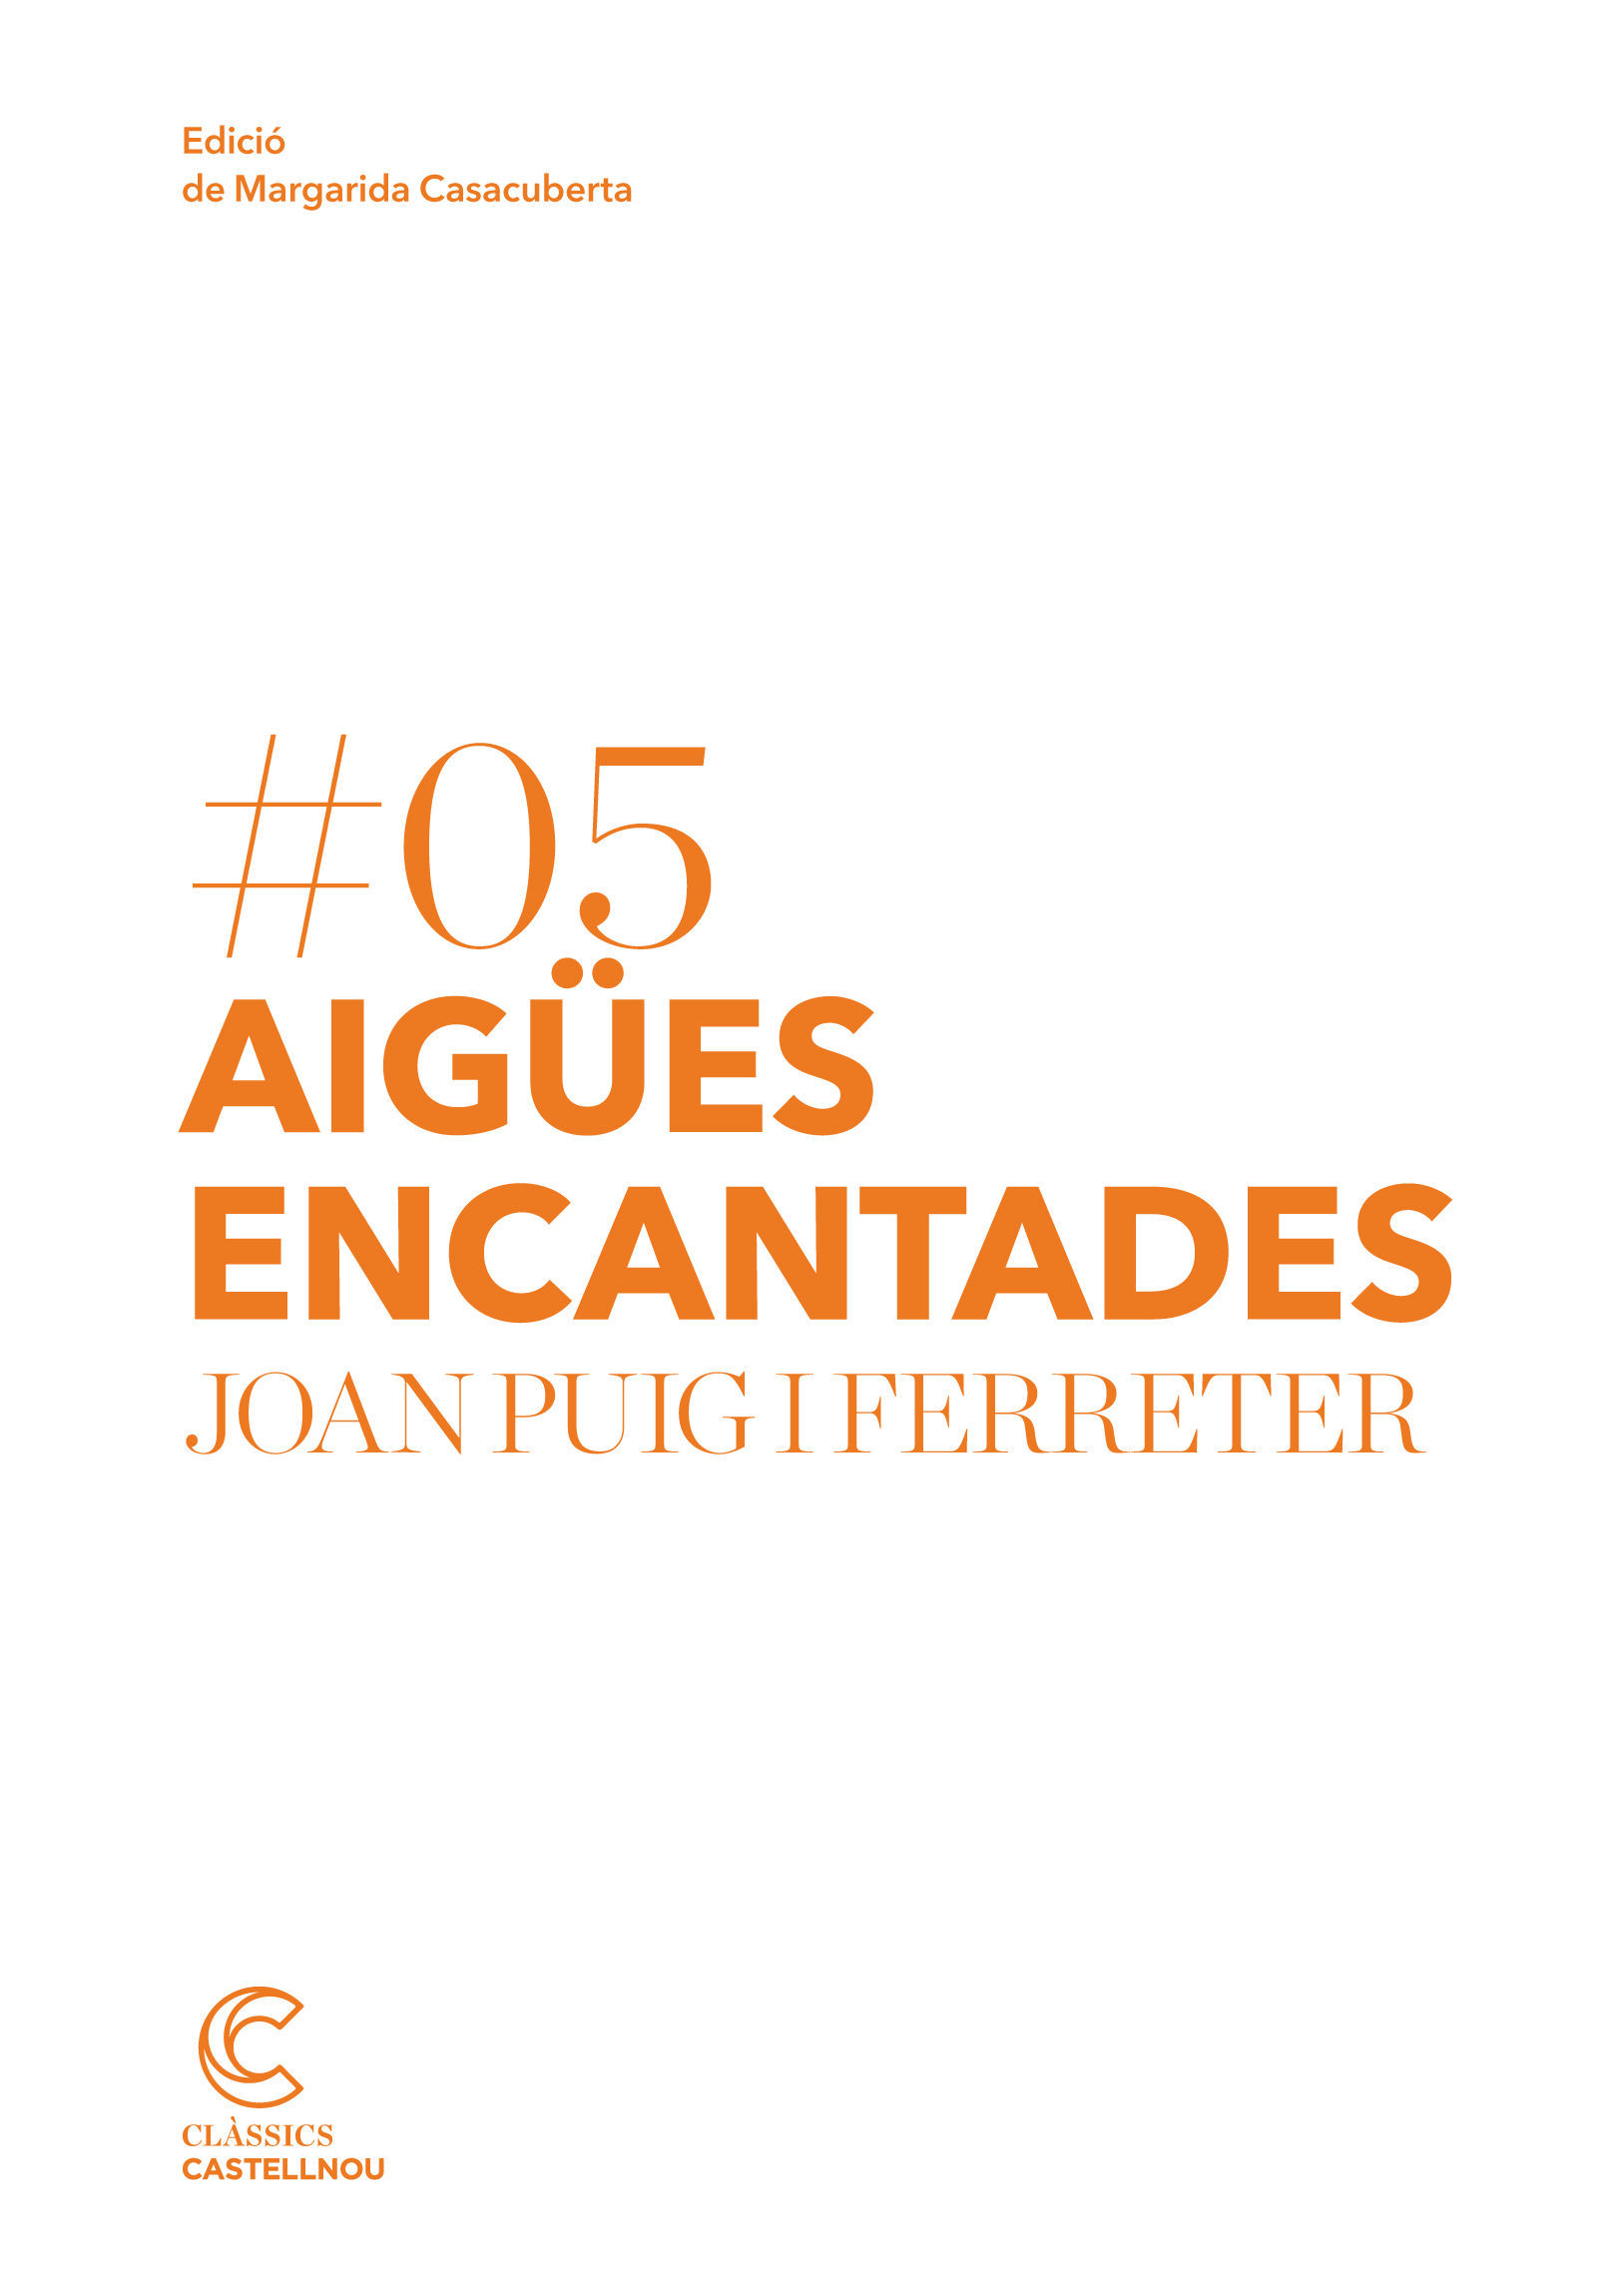 Aigues encantades (Catalan Edition)